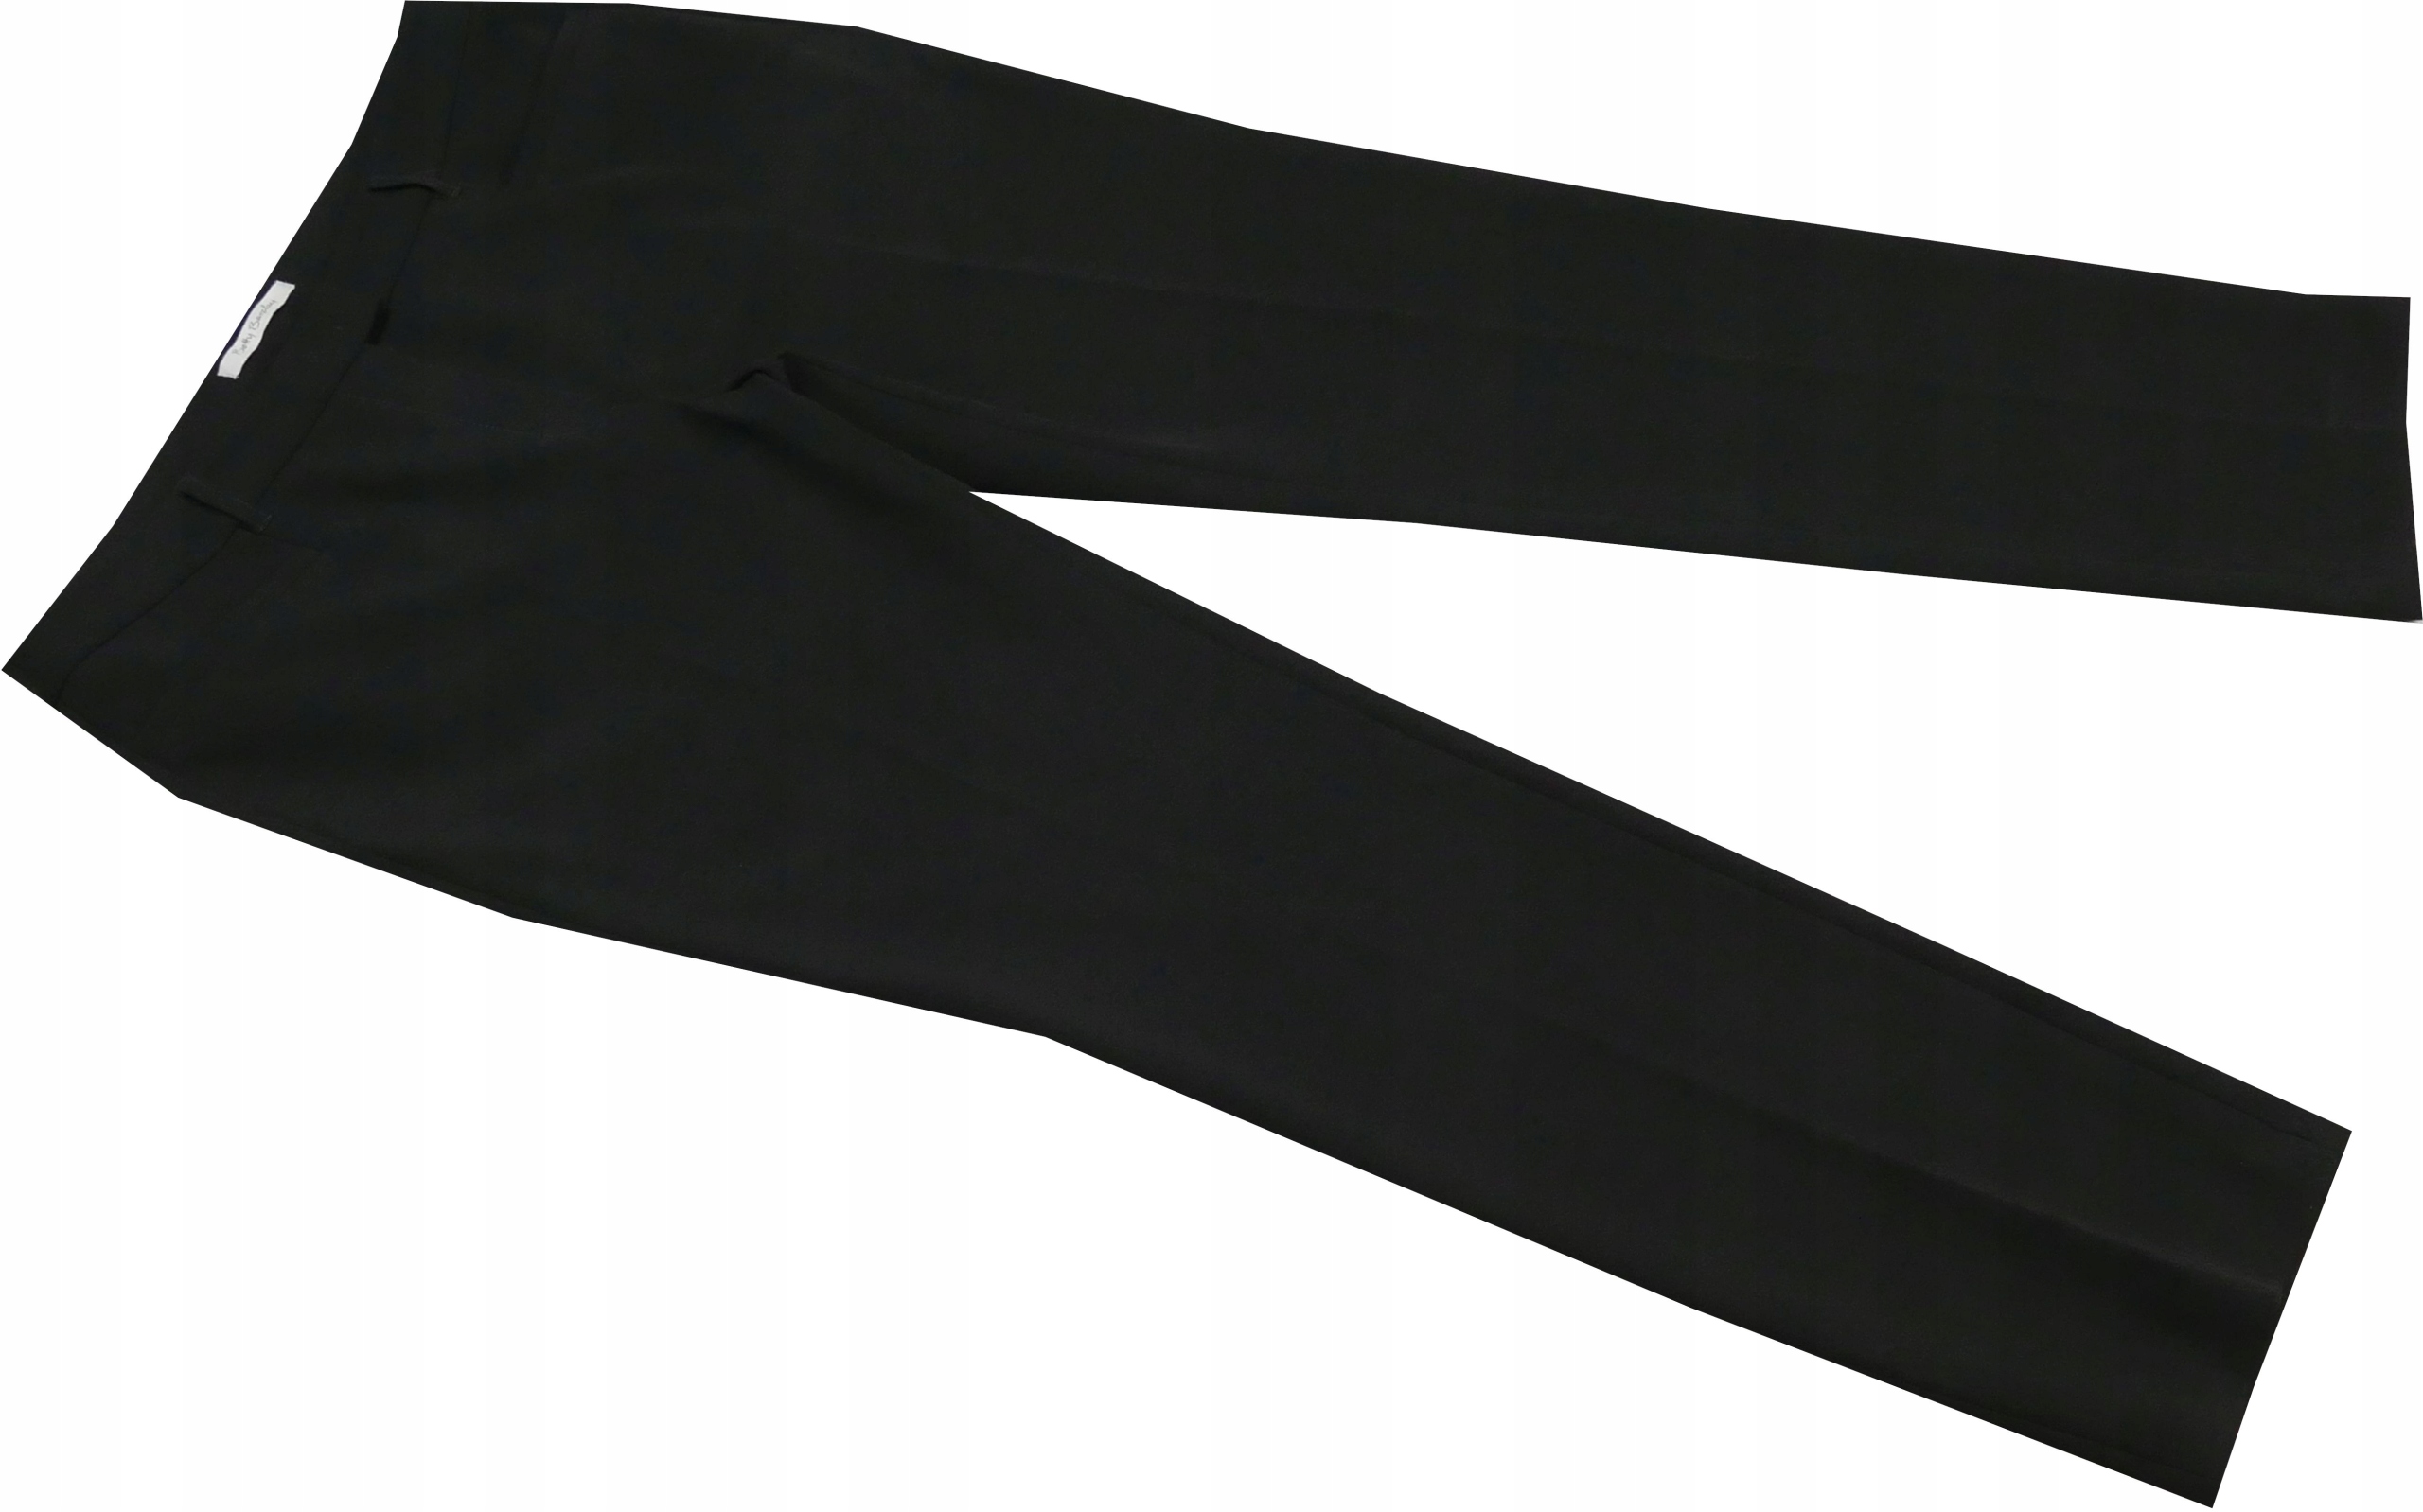 Moda Spodnie Spodnie z zakładkami Betty & Co Spodnie z zak\u0142adkami r\u00f3\u017cowy W stylu casual 